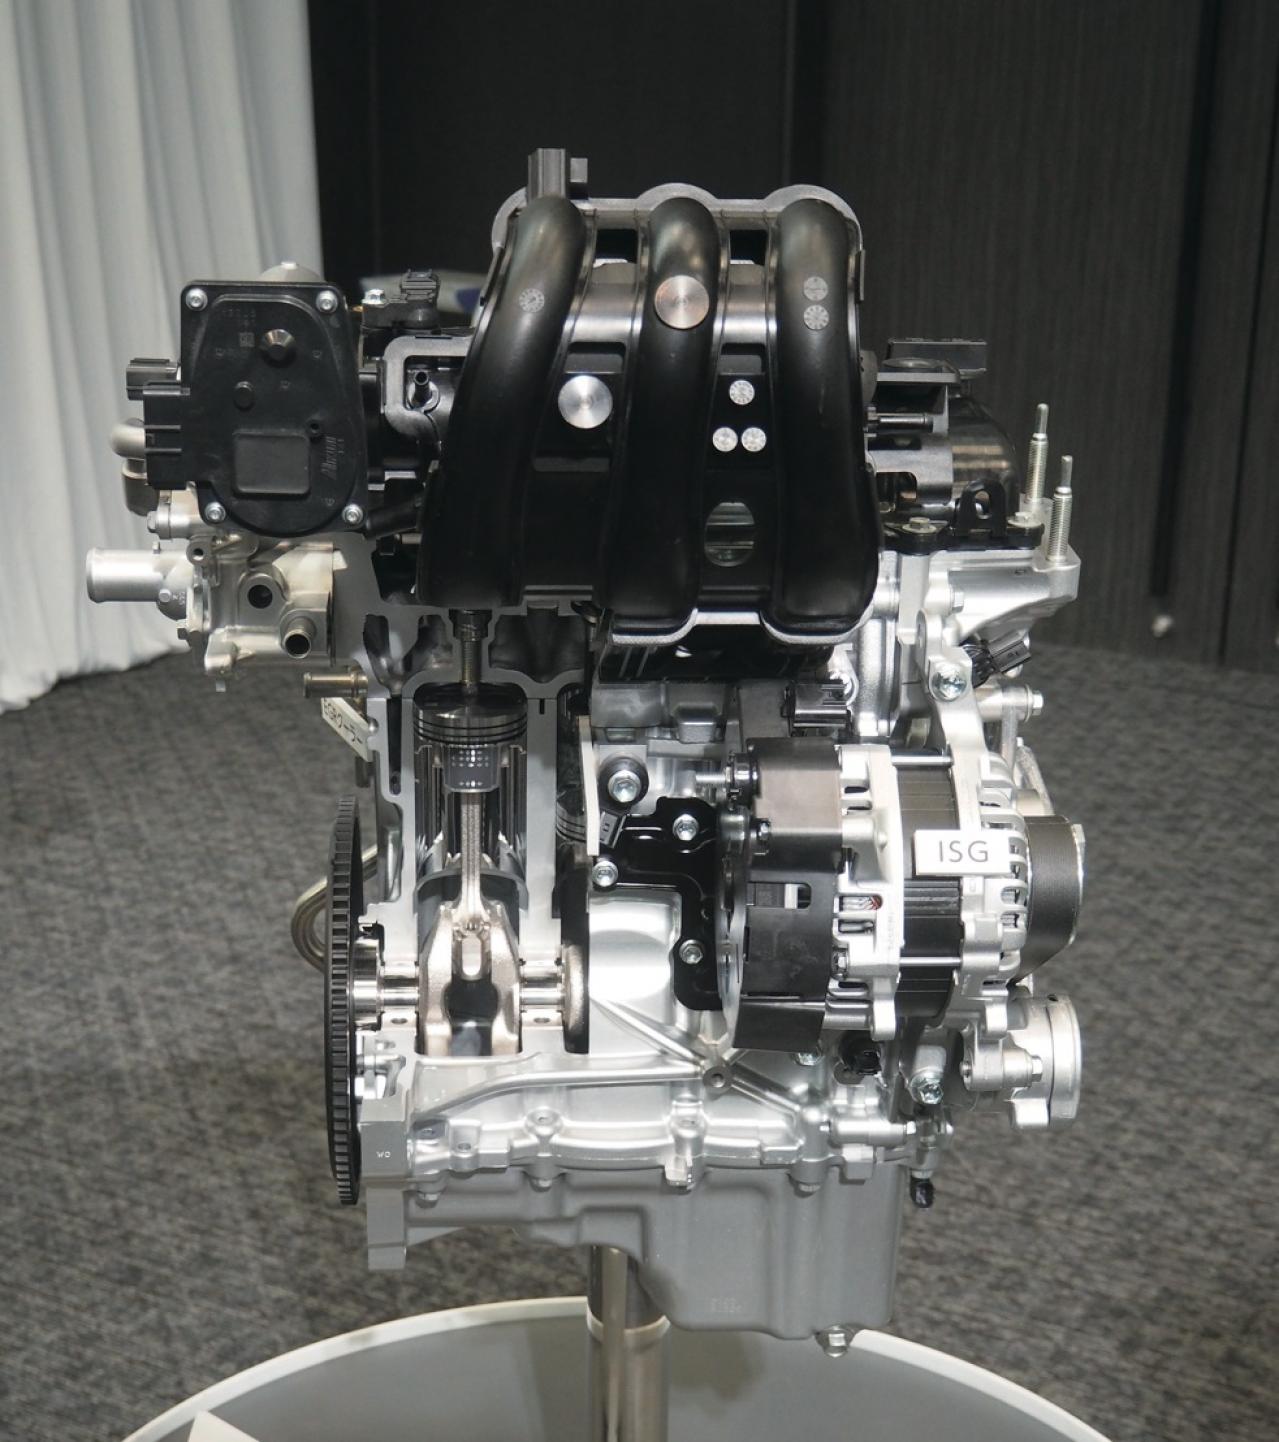 スズキ新型ハスラーのテクノロジー ロングストローク化 した新型自然吸気エンジン そしてボディに構造用接着剤を採用 軽 Rv系 Motor Fantech モーターファンテック